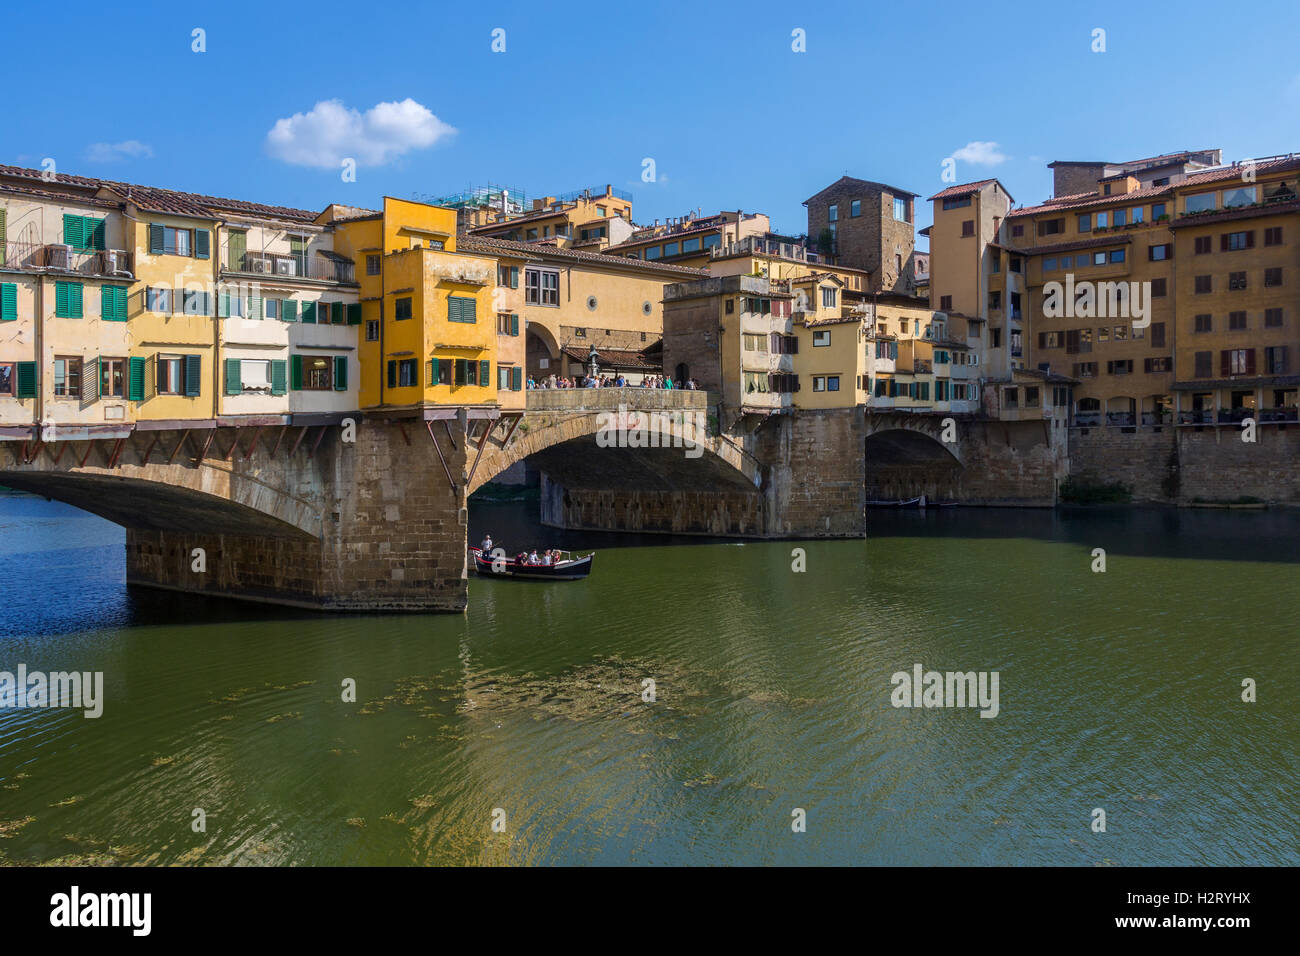 Florencia, Italia - El Ponte Vecchio (Puente Viejo] - Una ciudad medieval puente de piedra sobre el río Arno. Foto de stock